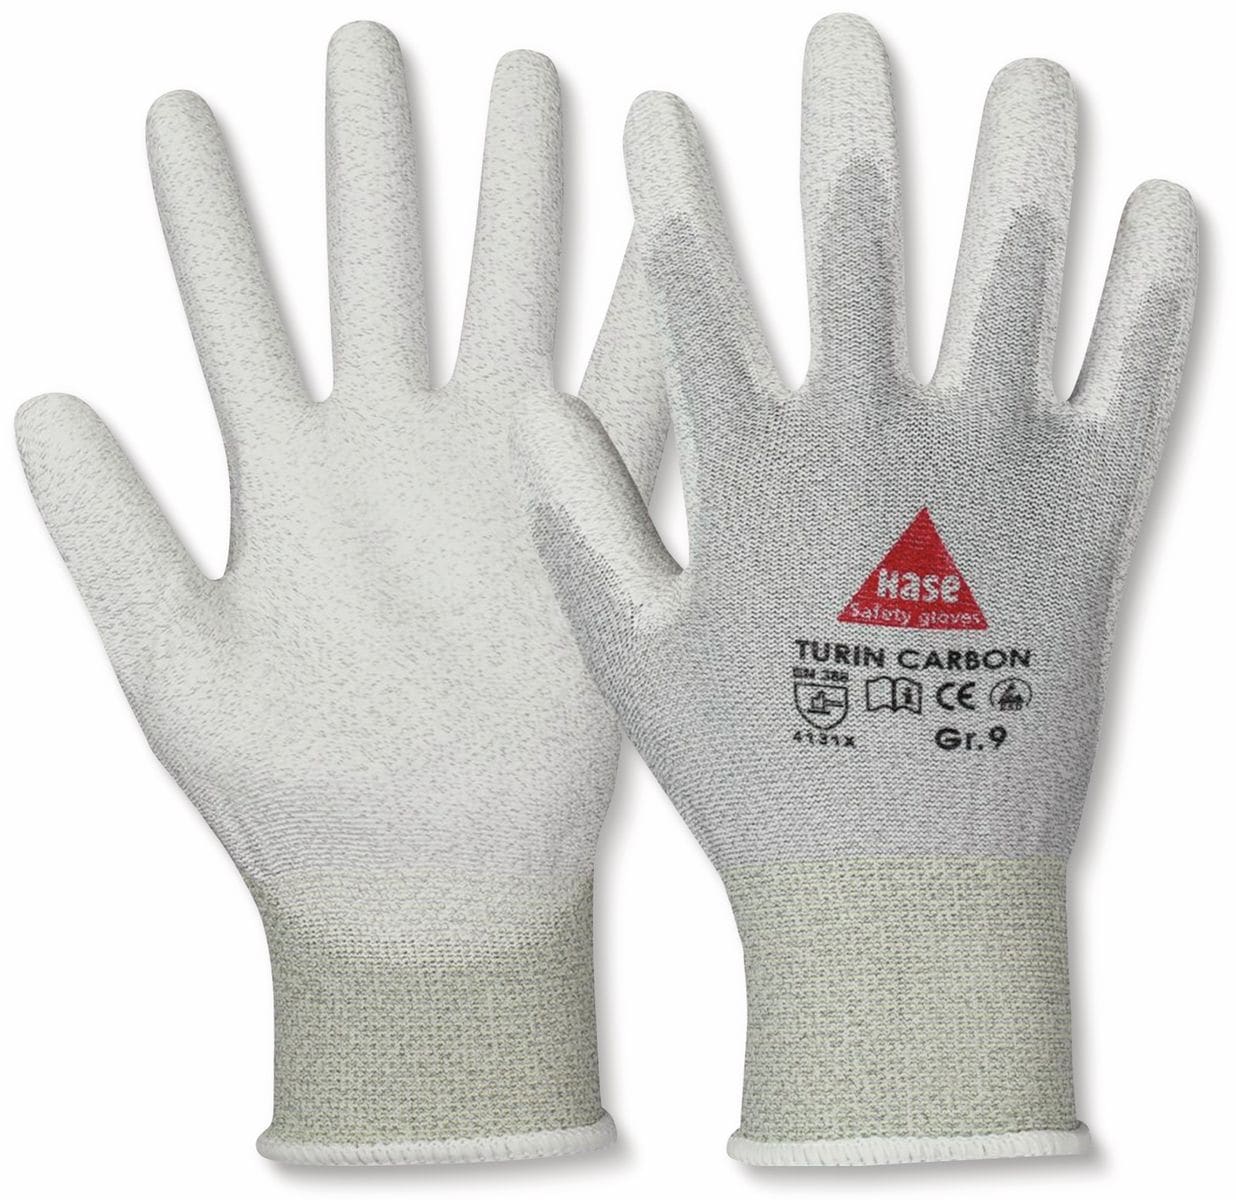 HASE SAFETY GLOVES Montagehandschuhe, TURIN CARBON, EN388, EN 420, antistatisch, grau/weiß, Größe 9 von Hase Safety gloves